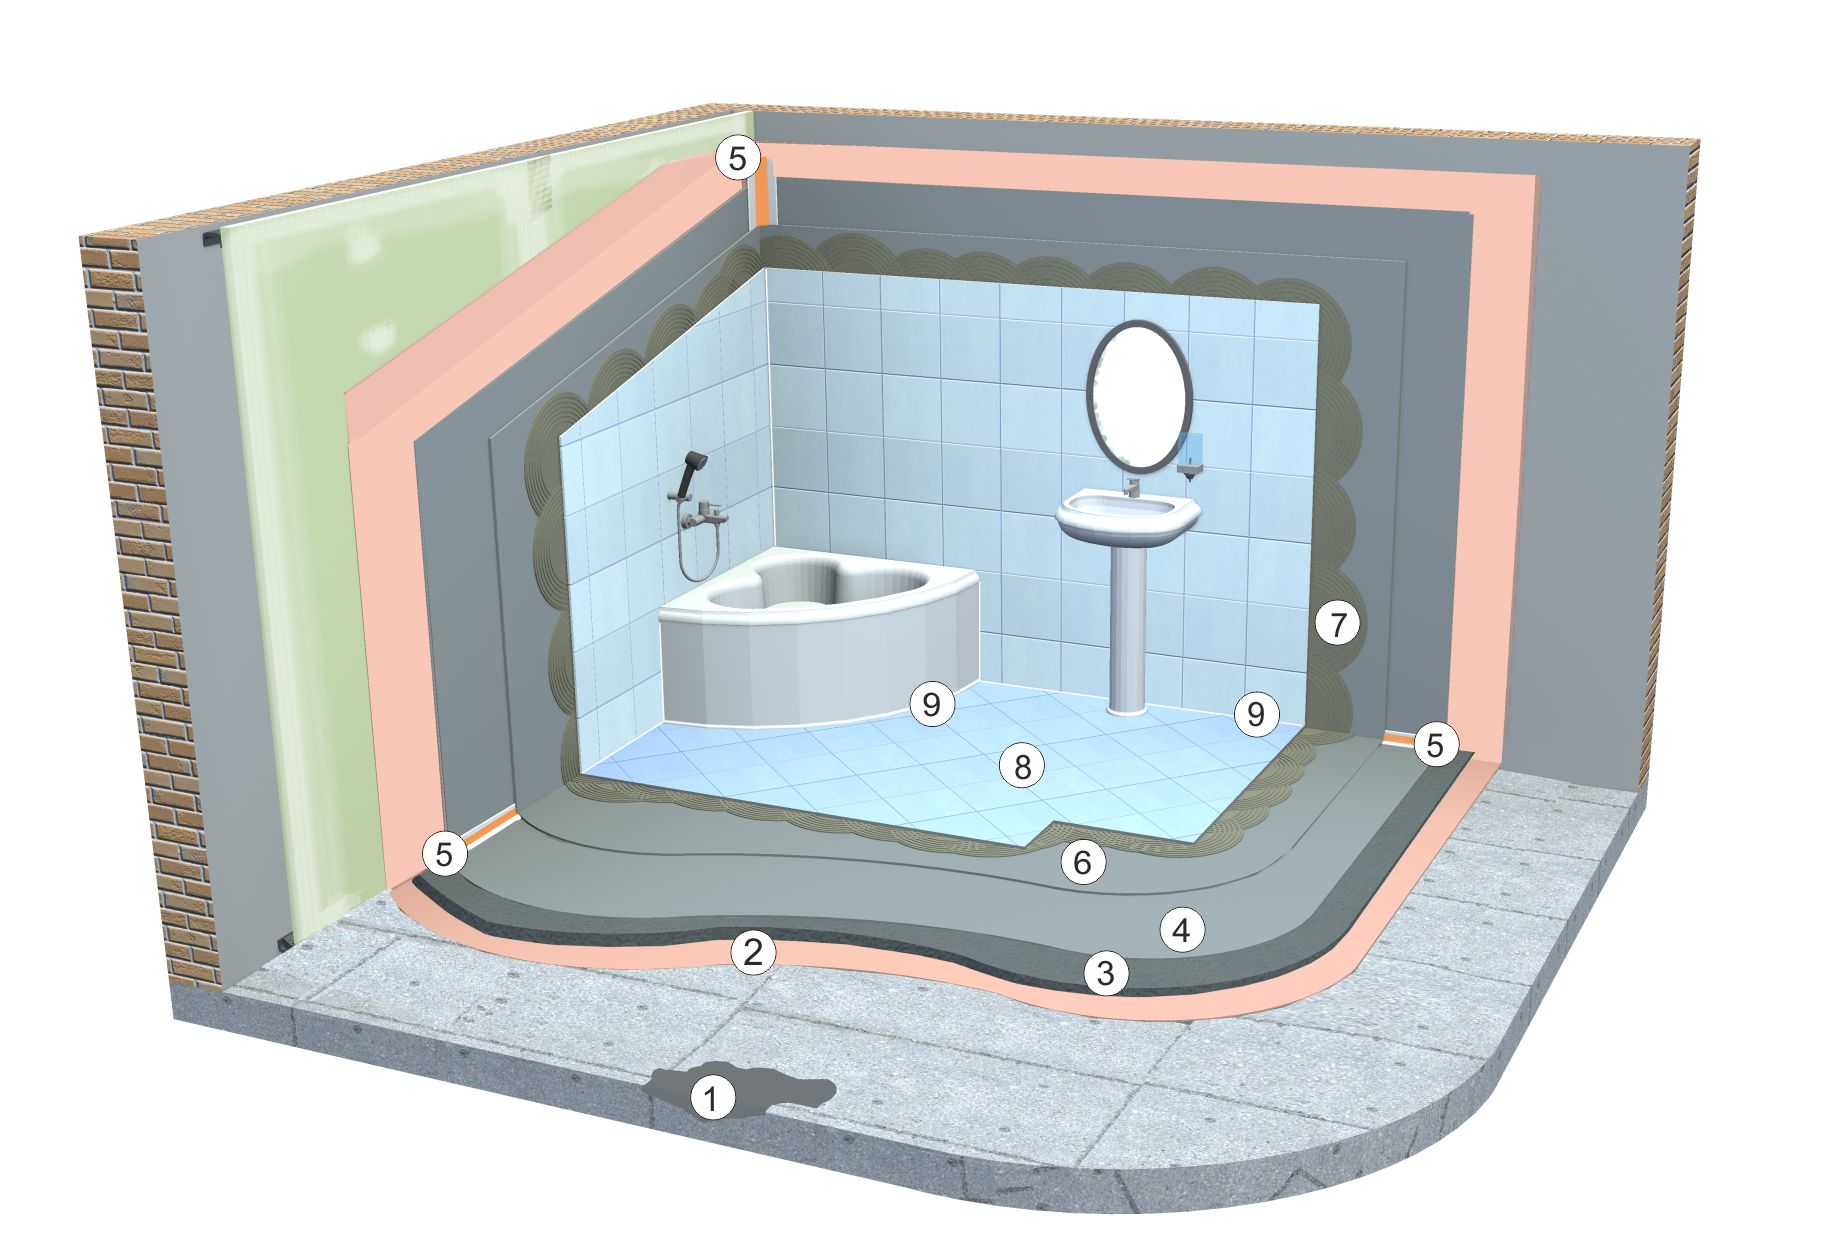 Bathroom Waterproofing